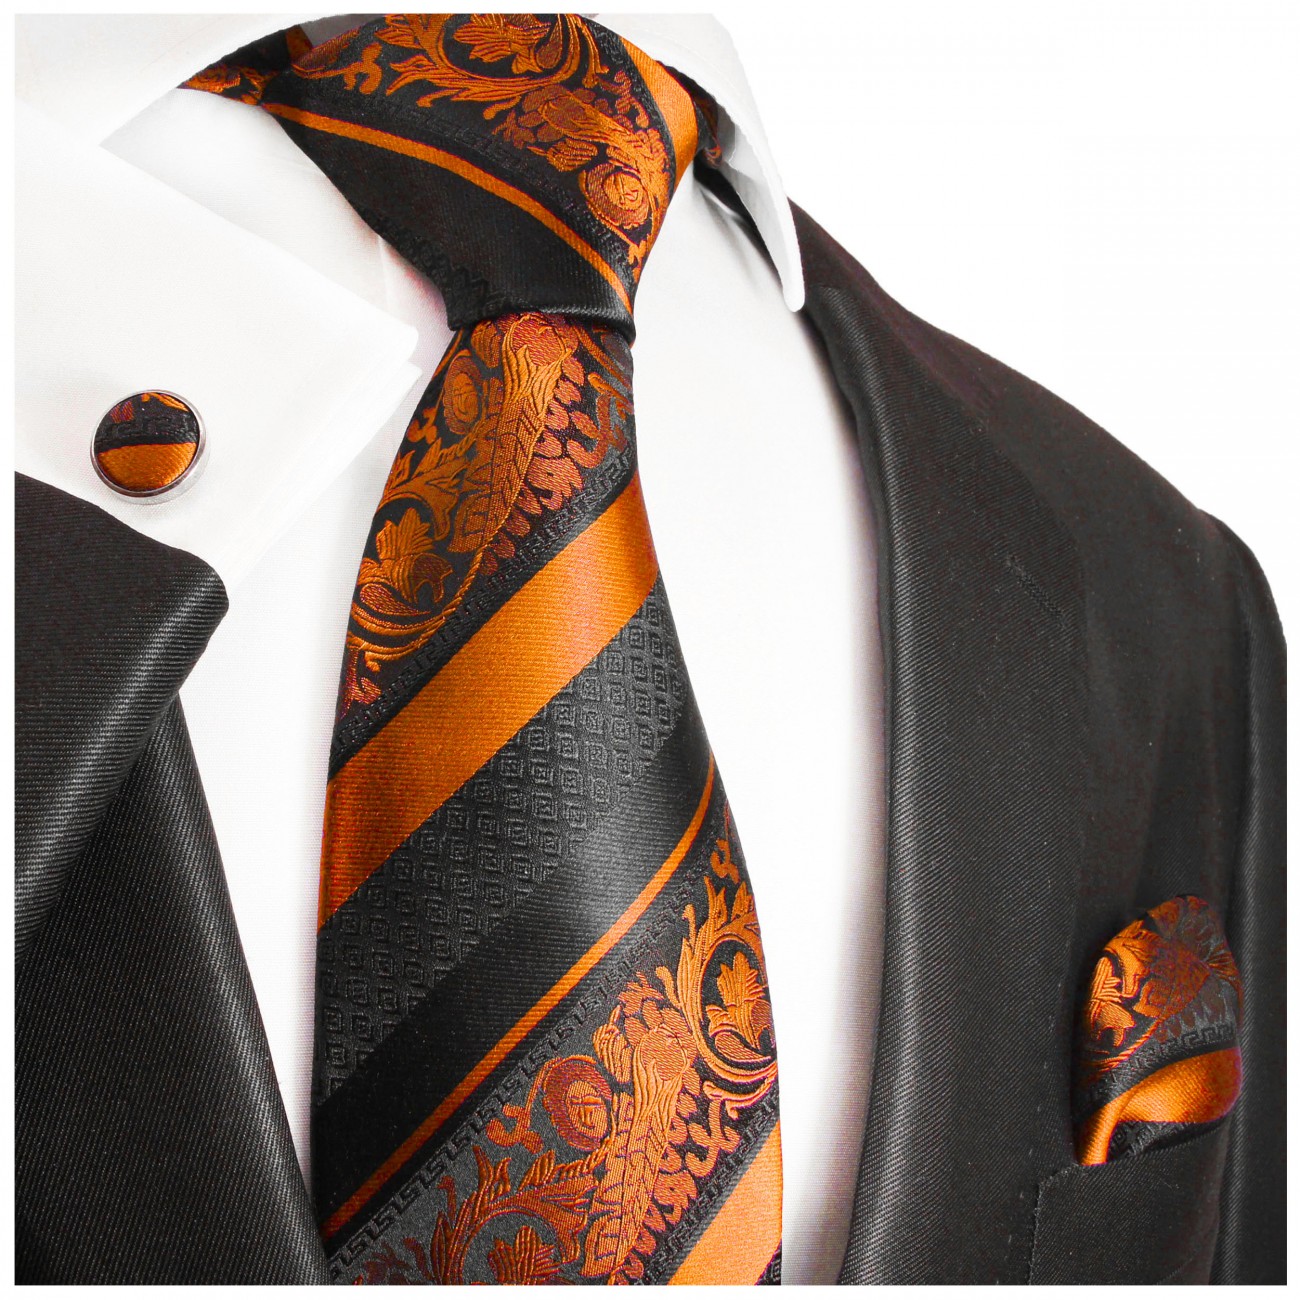 Krawatte orange schwarz barock gestreift mit Einstecktuch und Manschettenknöpfe